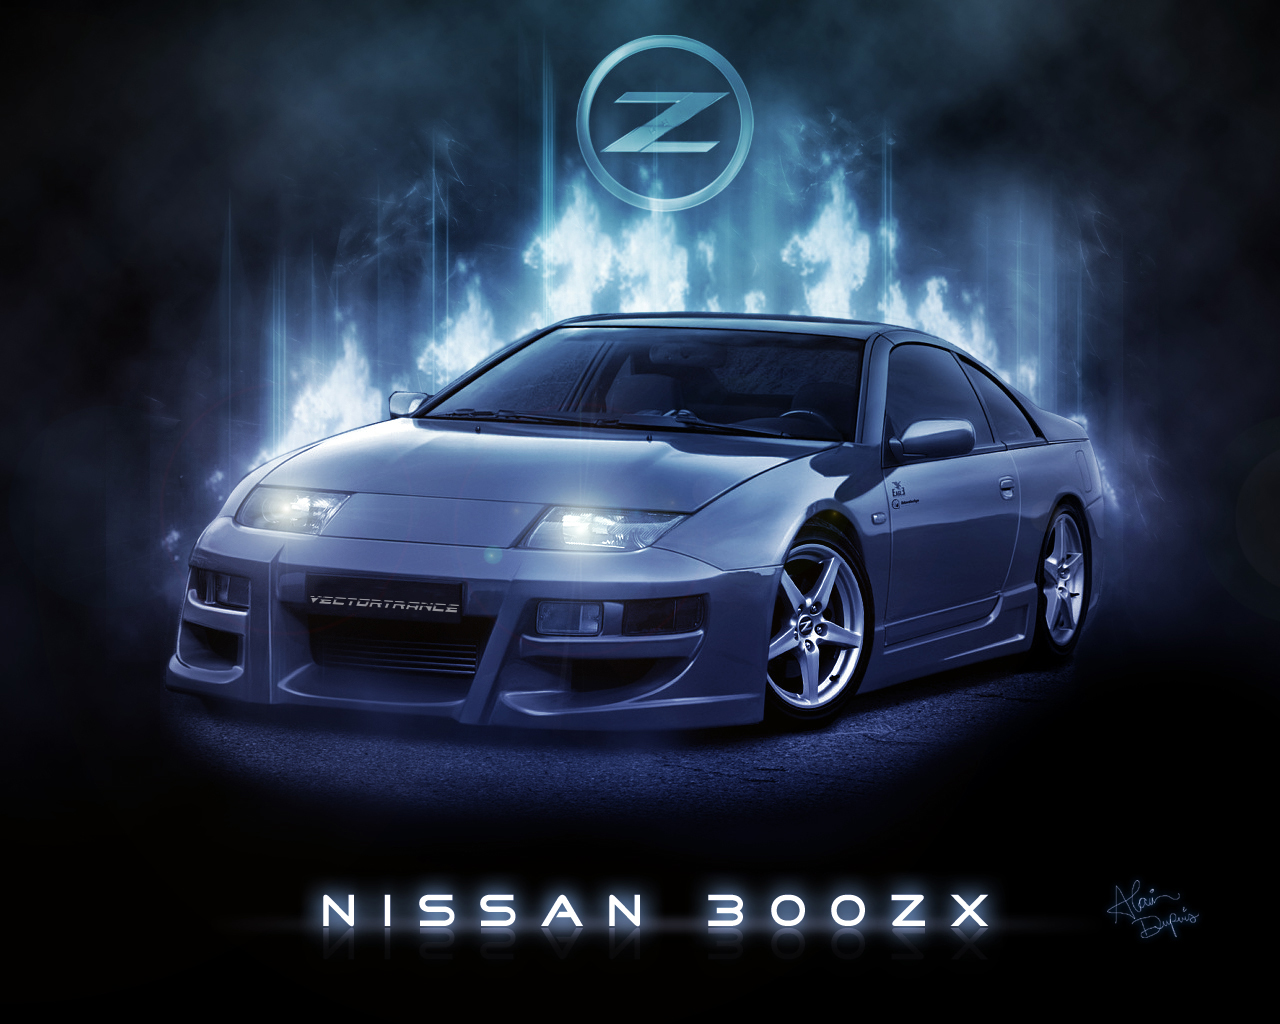 Free download Nissan 300zx Twin Turbo Wallpaper [1280x1024